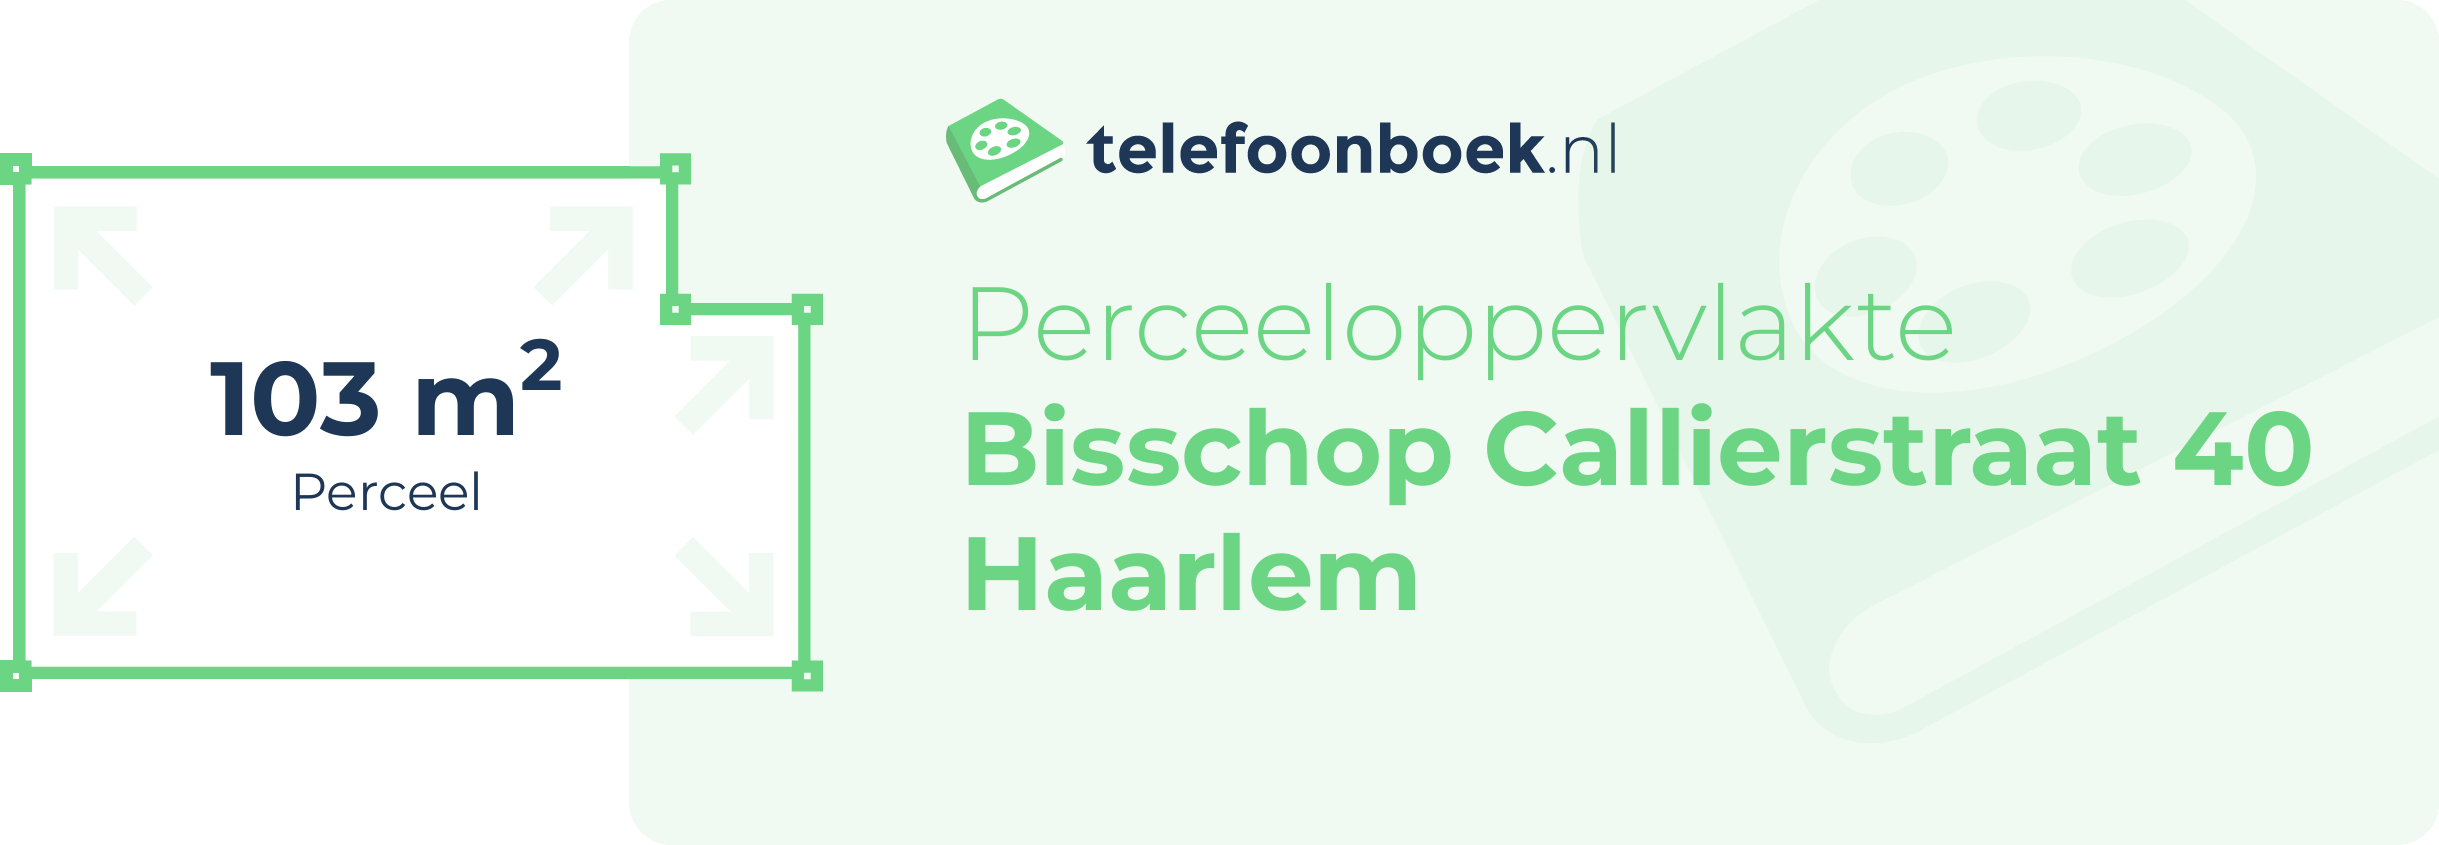 Perceeloppervlakte Bisschop Callierstraat 40 Haarlem